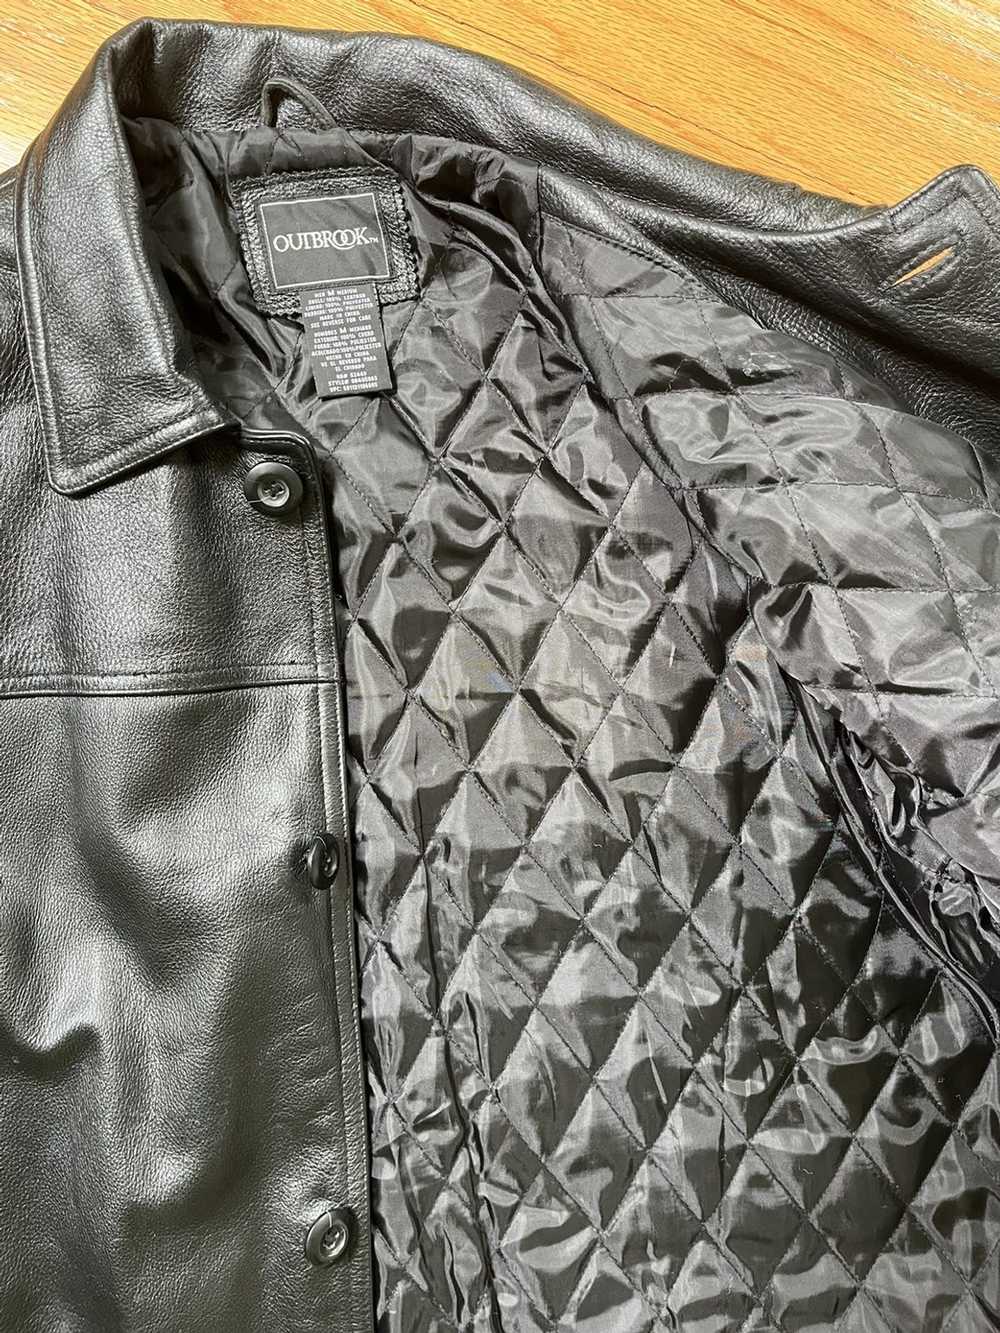 Leather Jacket × Vintage Outbrook Men's Genuine P… - image 2